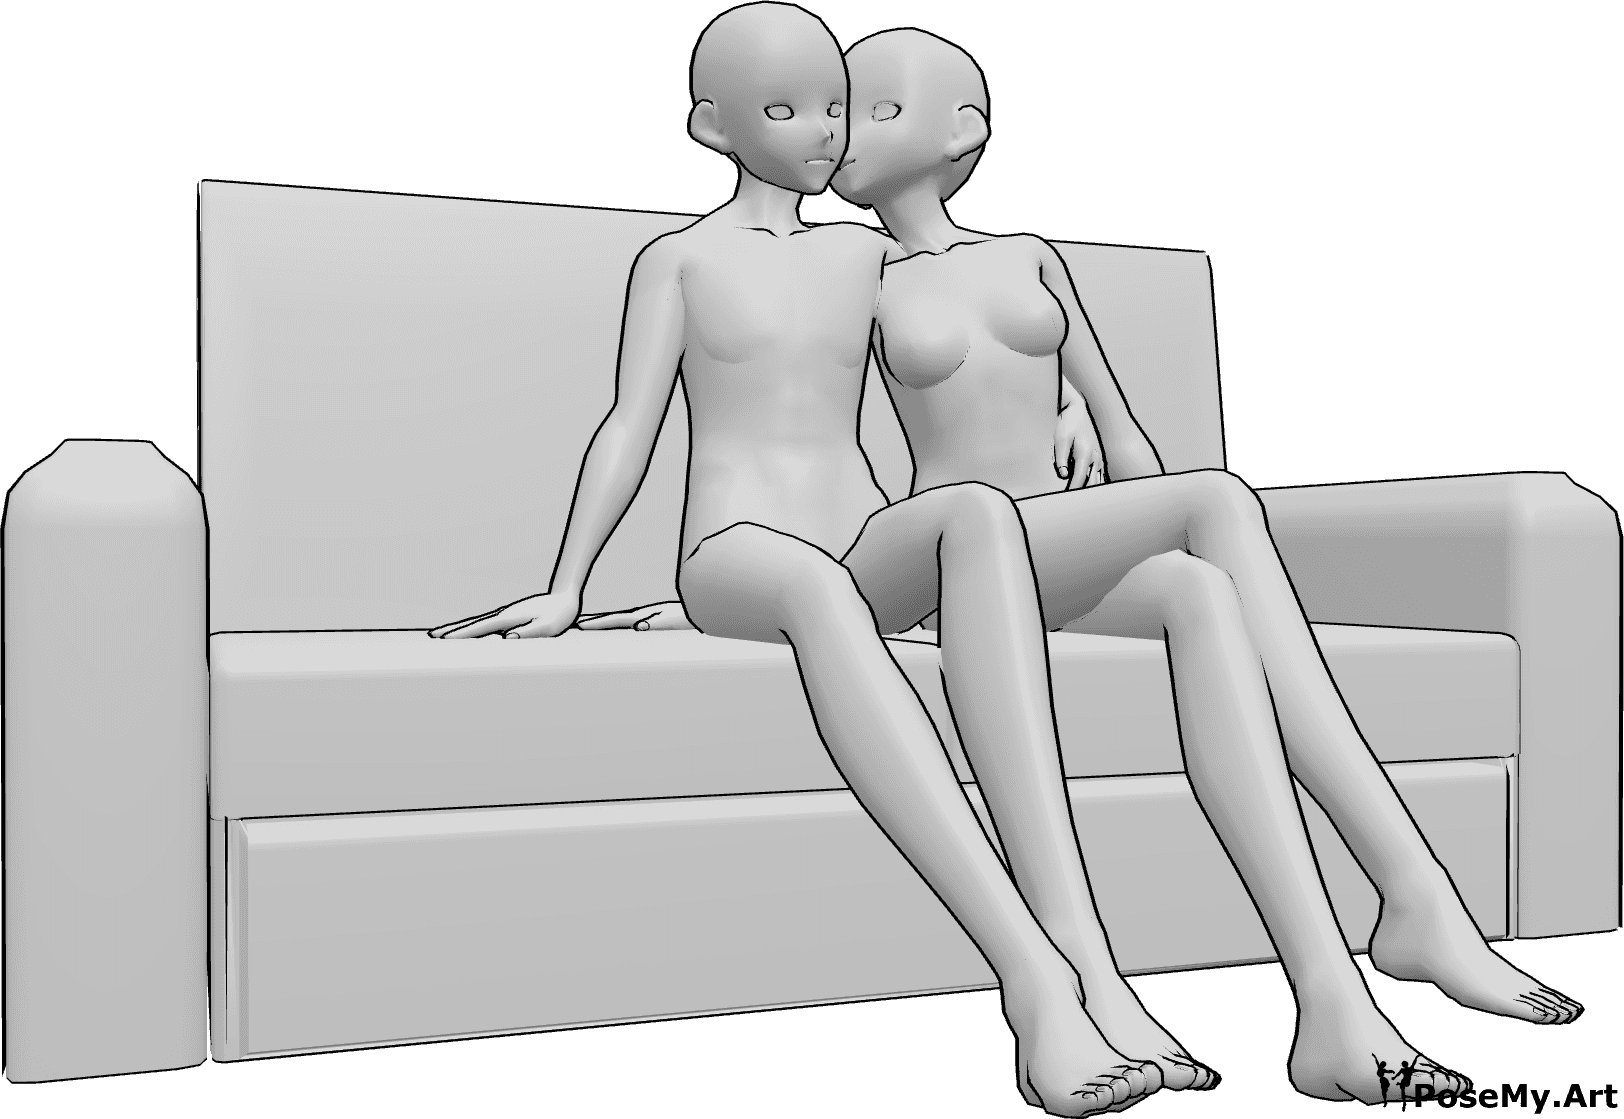 Referencia de poses- Postura de beso en la mejilla sentada - Anime femenino y masculino están sentados en el sofá, la hembra está dando un beso en la mejilla